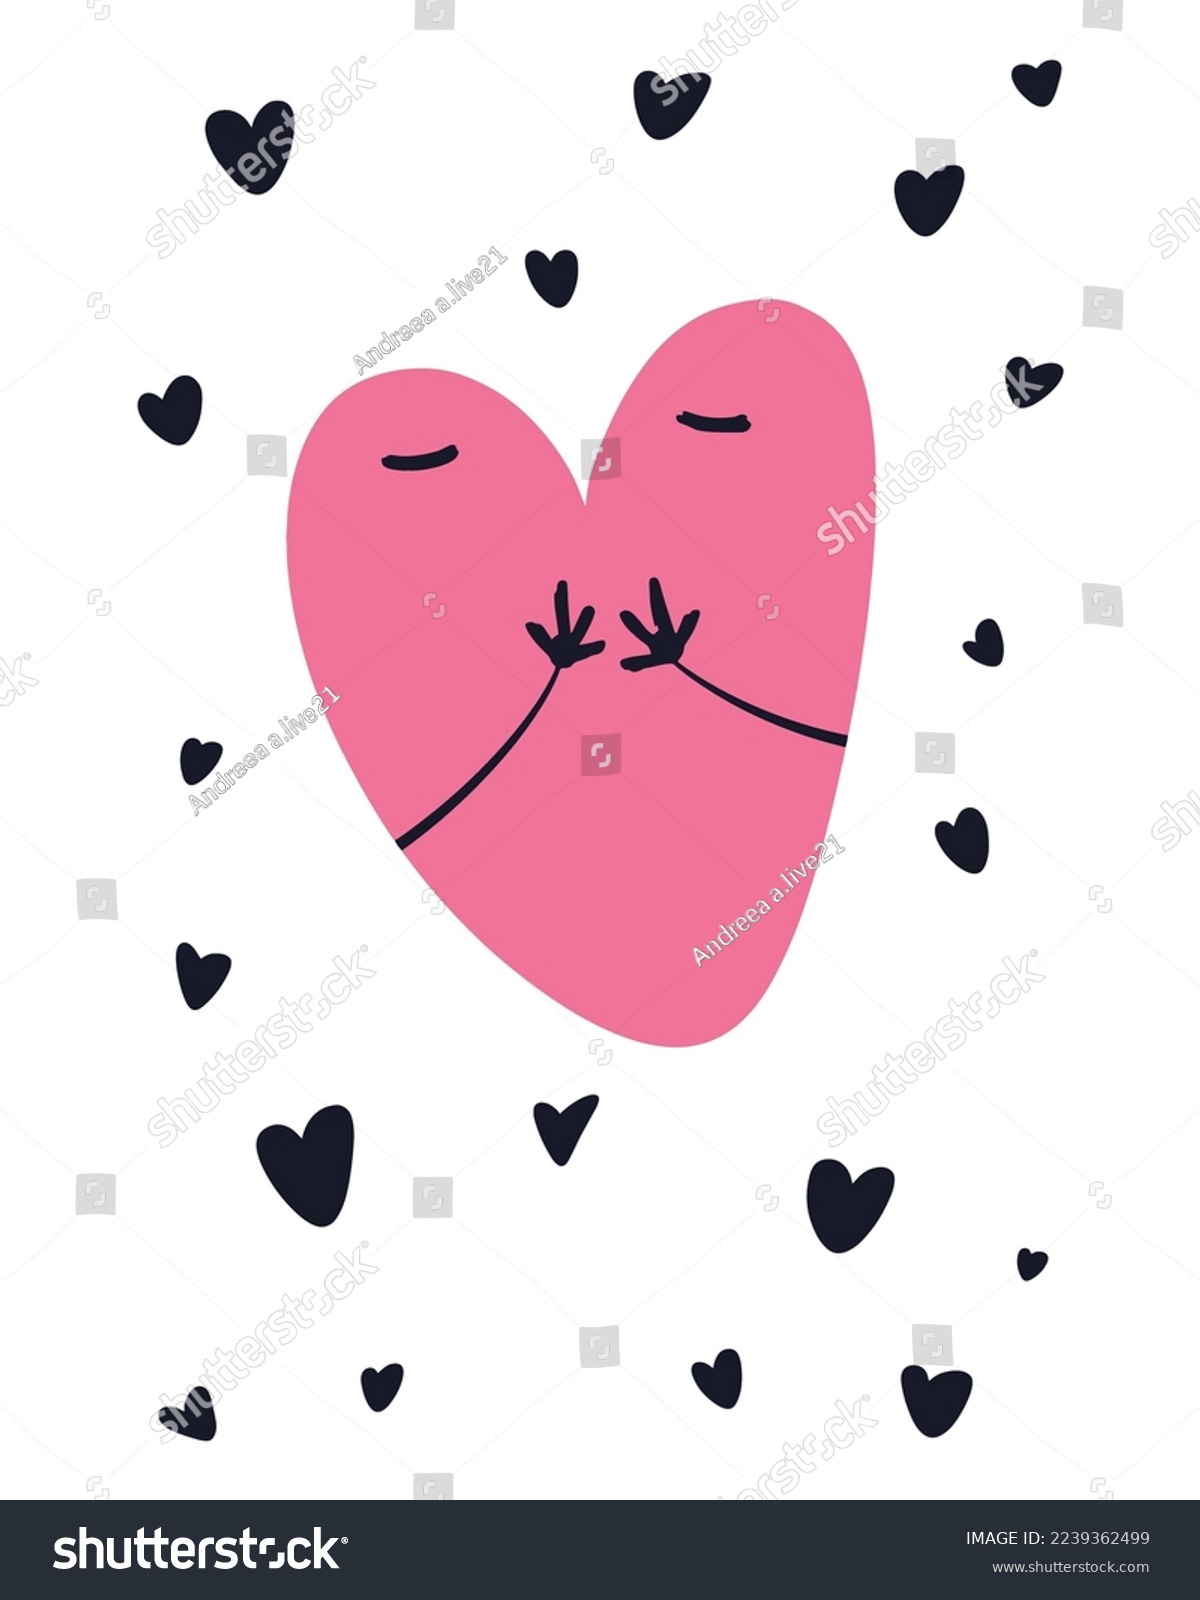 SVG of Valentine's Day Vector SVG, Doodle Hearts Illustration, Hearts Vectors, Love Illustration, Pink Hearts, Painted Hearts Illustration, Cute Hands Heart svg